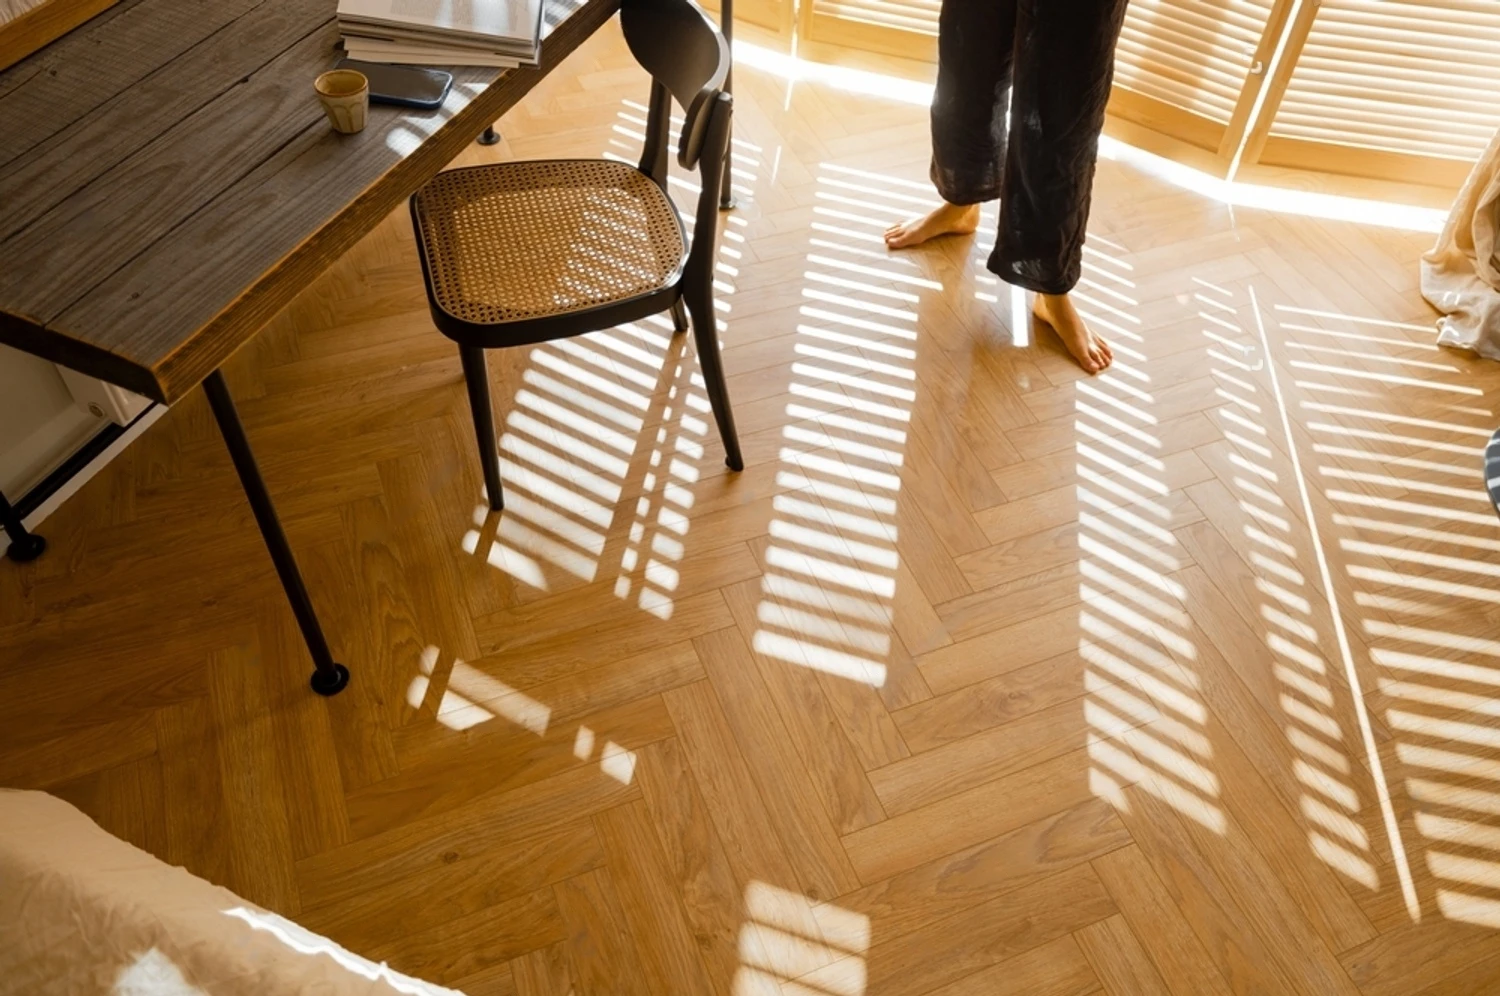 francuski slog sevron izgled ugradjenog parketa na podu